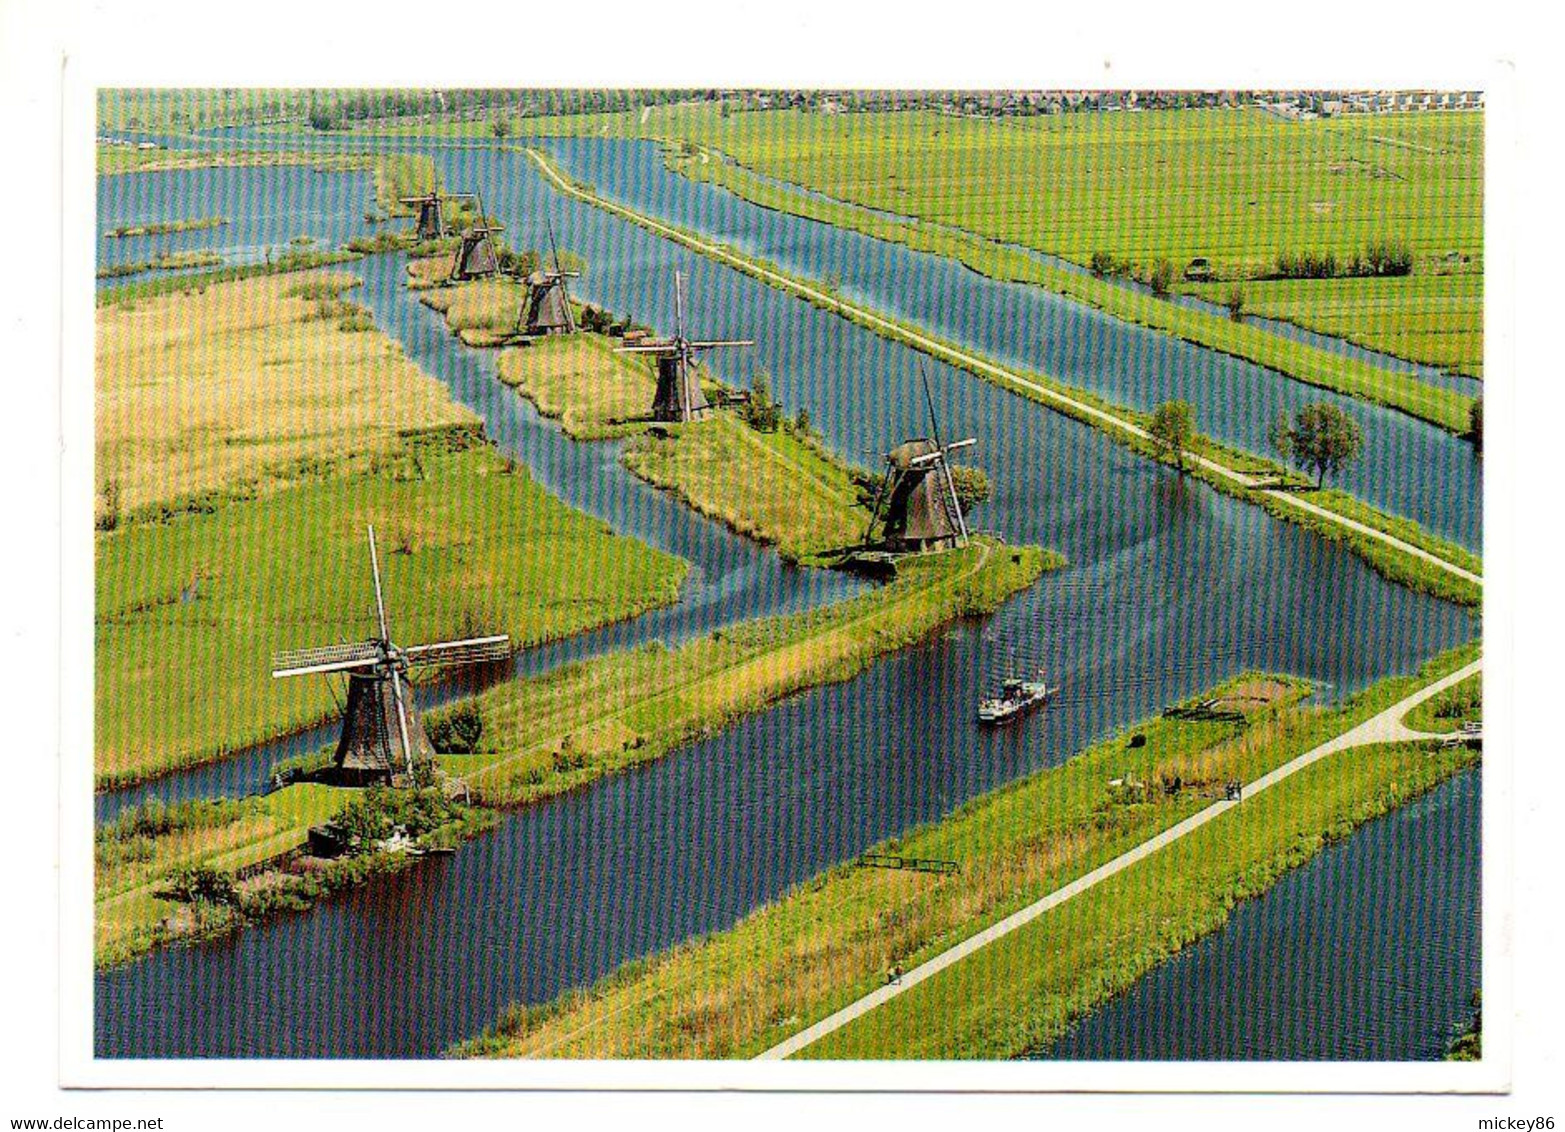 1999--Vue Aérienne D'un Paysage De Moulins à Vent Aux Pays-Bas ....timbre...cachet.......à Saisir - Mühlen